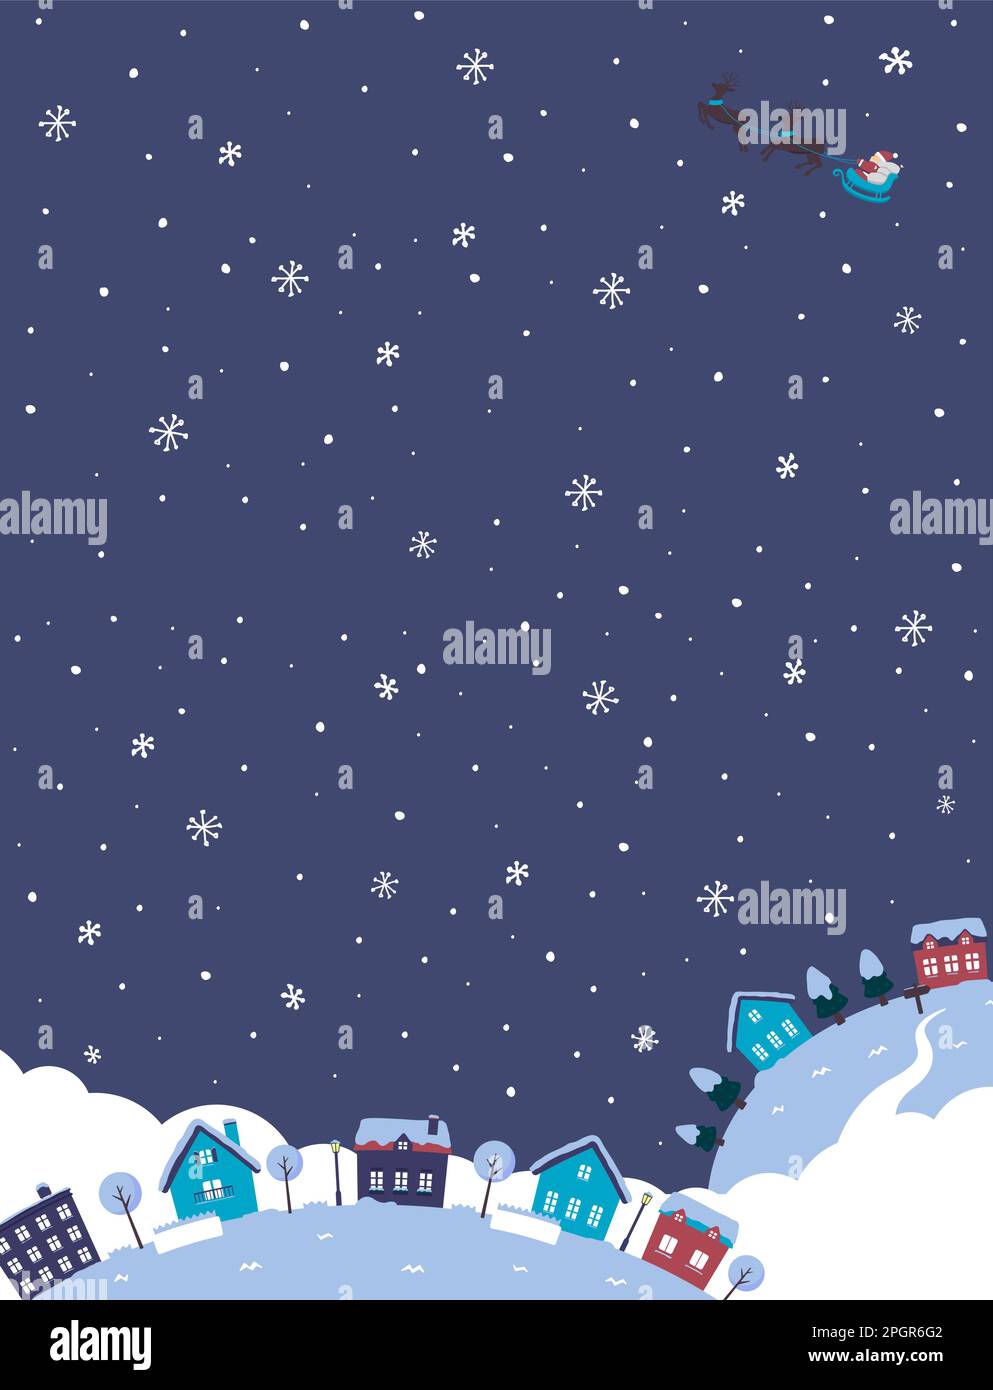 Webbanner Fantasy Planet Illustration mit Weihnachtsmotiv (mit Platz für Design und Text) | Porträt Stock Vektor